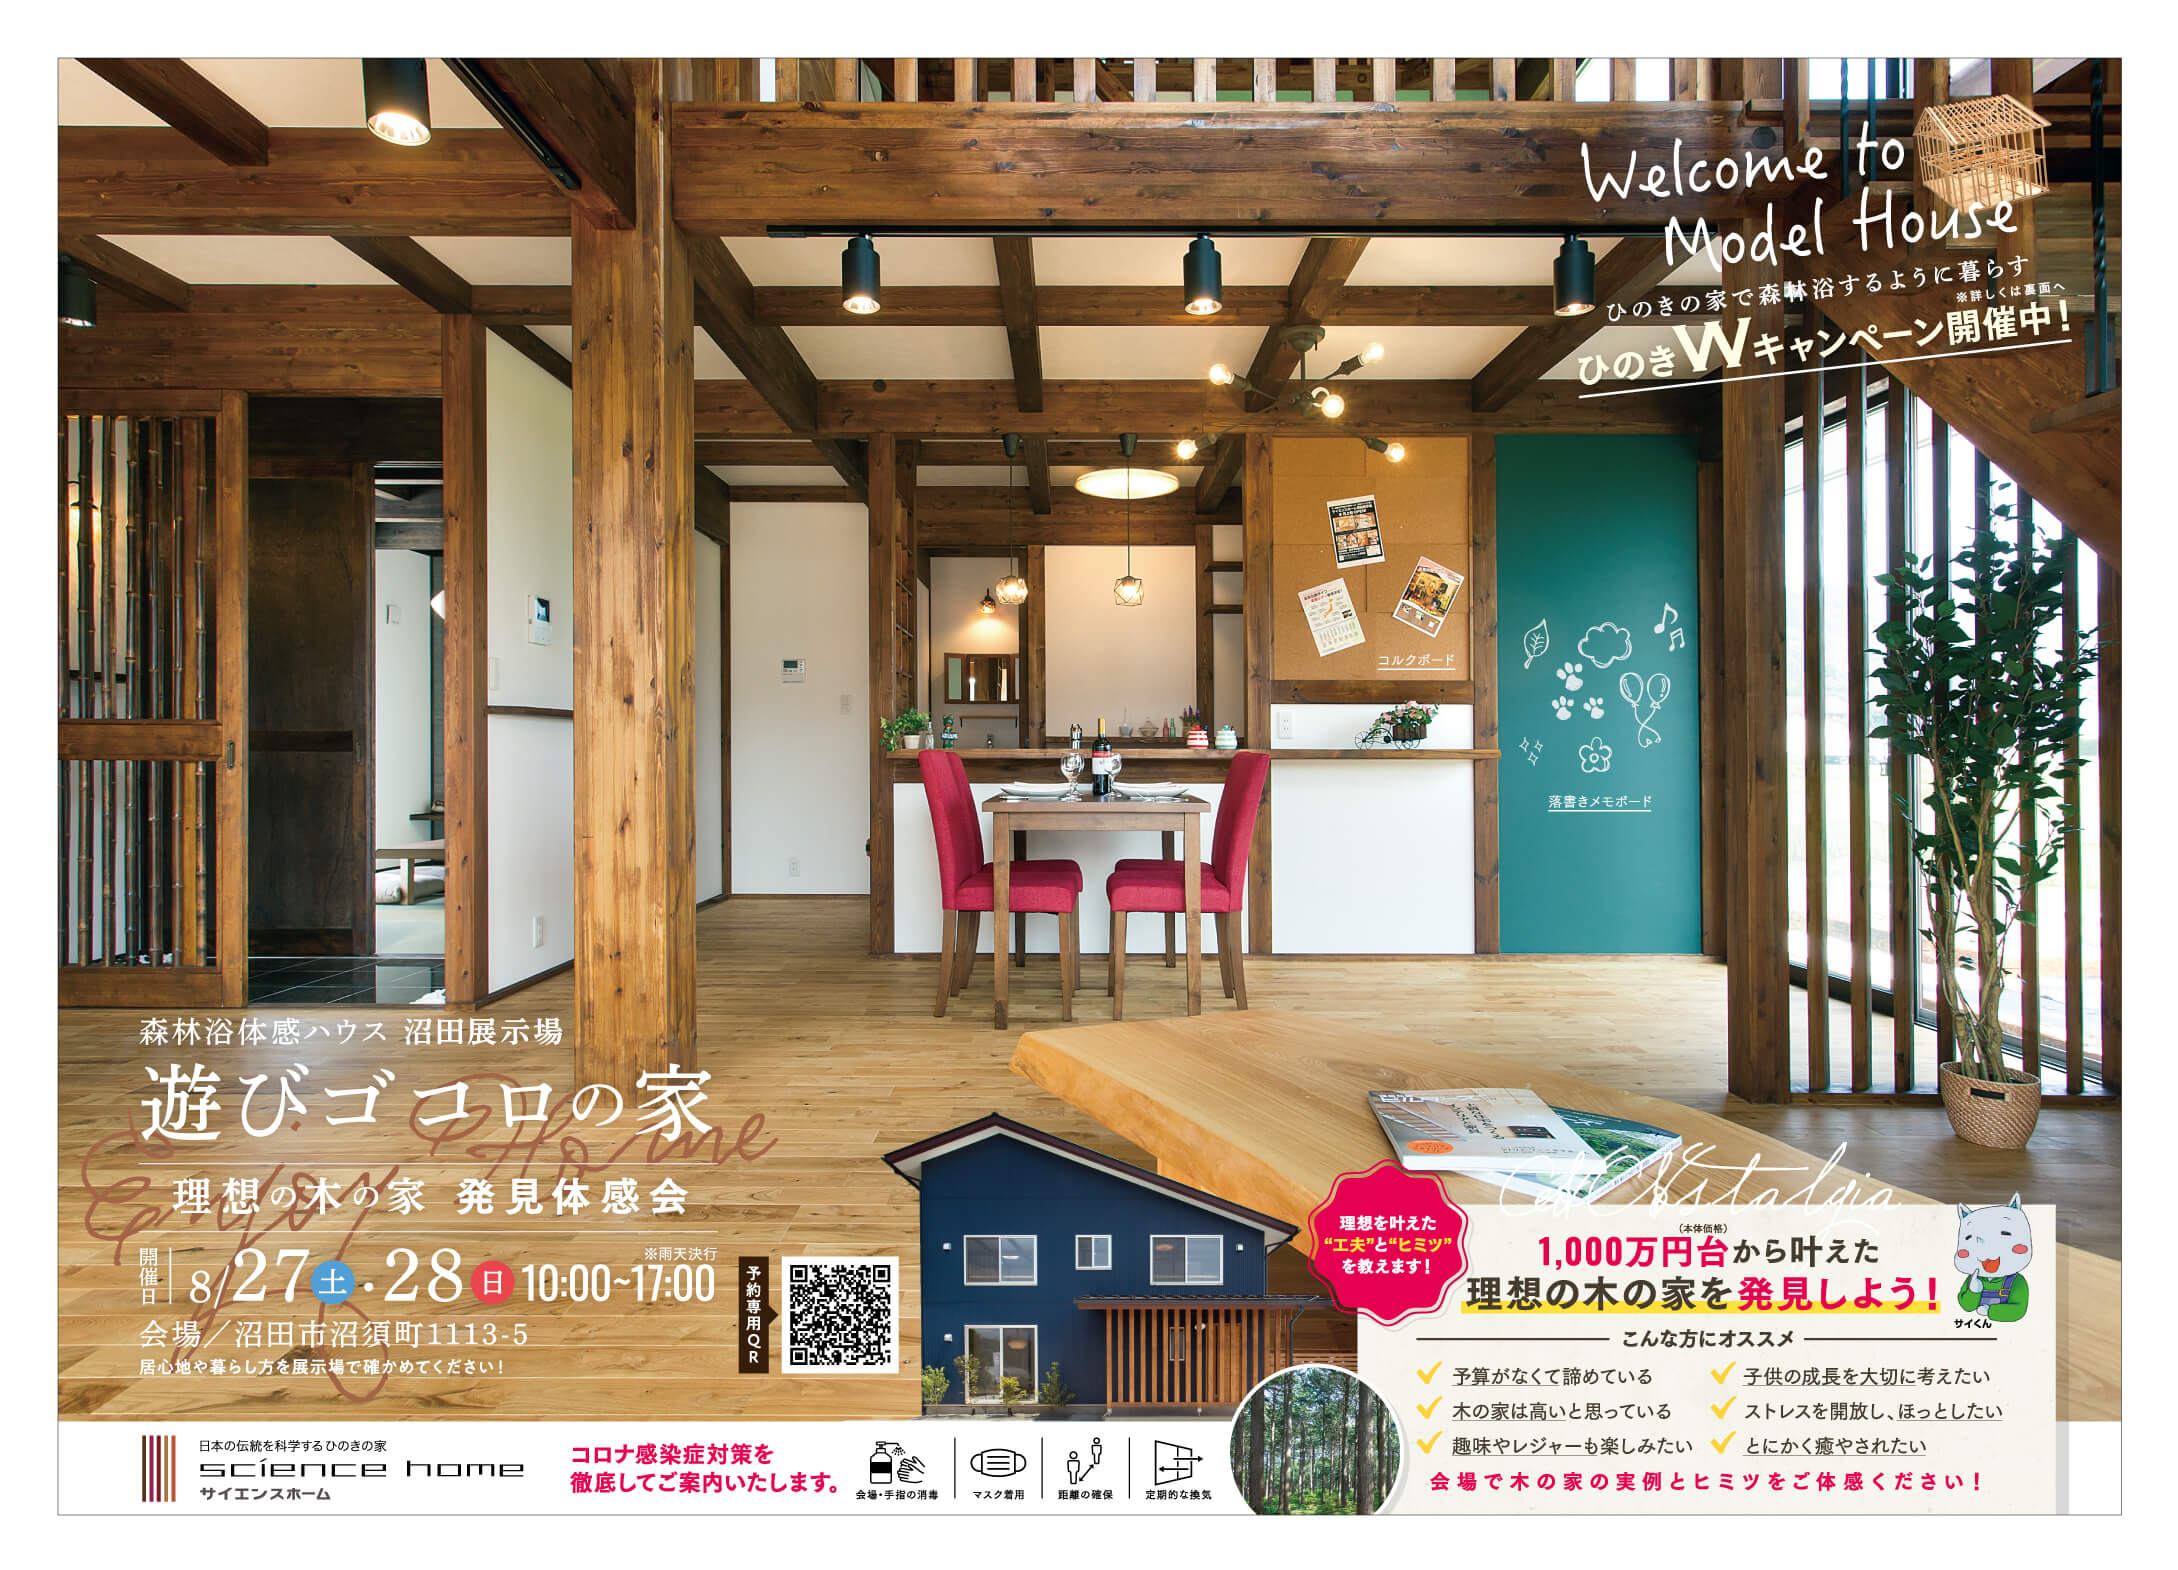 沼田展示場にて「理想の木の家 発見体感会」を開催いたします!! アイキャッチ画像